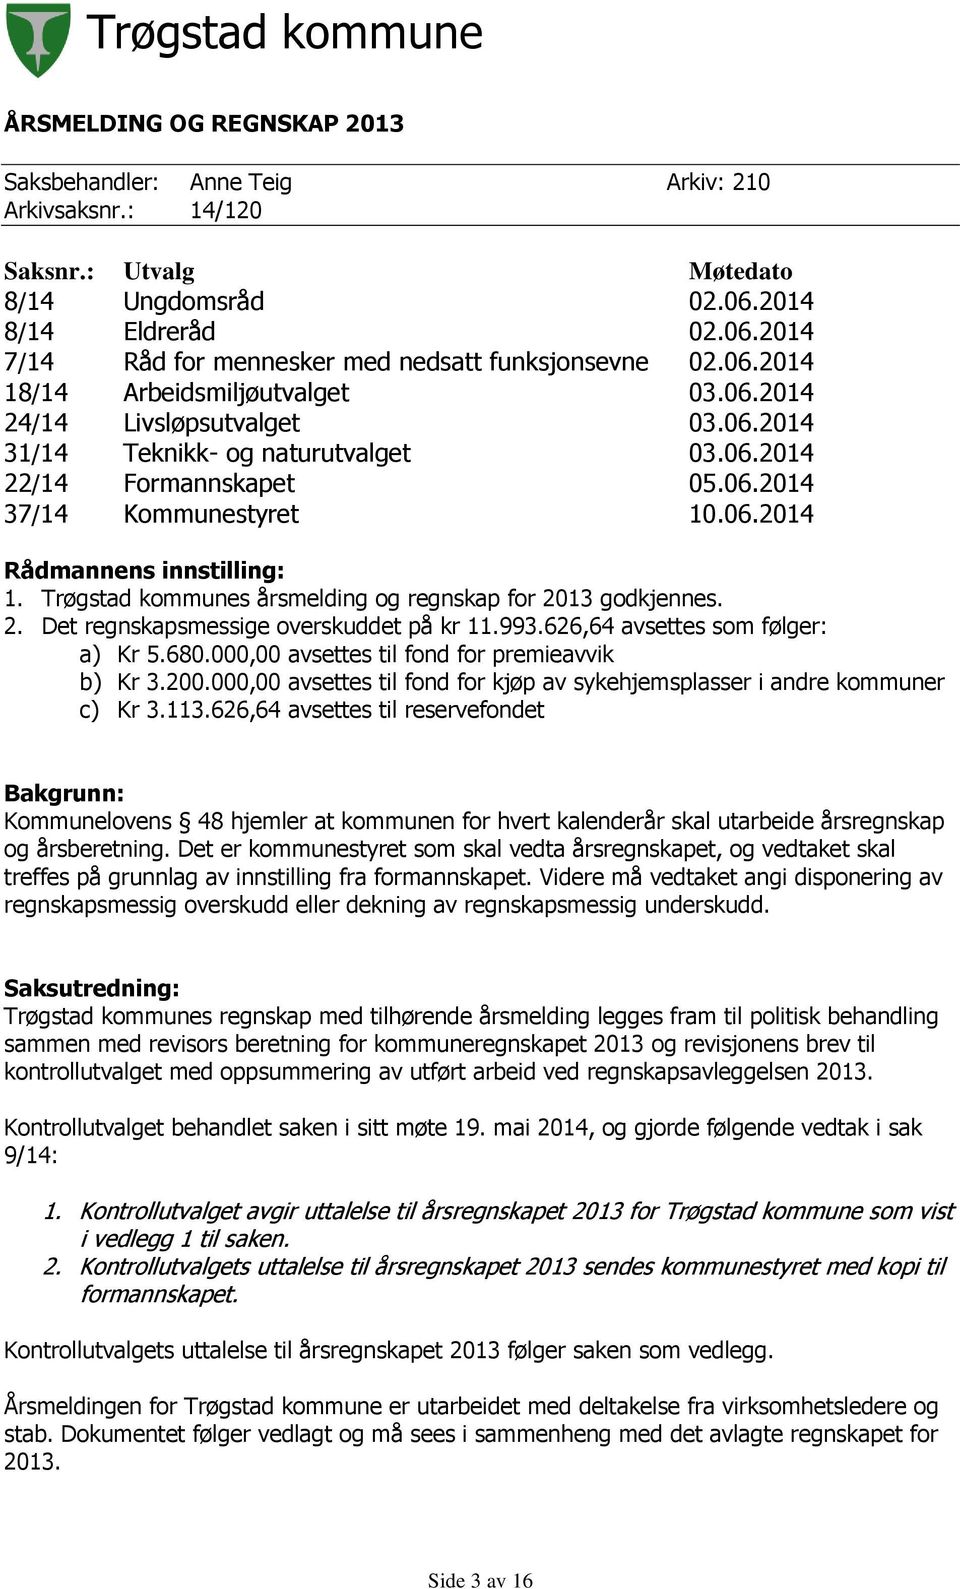 Trøgstad kommunes årsmelding og regnskap for 2013 godkjennes. 2. Det regnskapsmessige overskuddet på kr 11.993.626,64 avsettes som følger: a) Kr 5.680.000,00 avsettes til fond for premieavvik b) Kr 3.